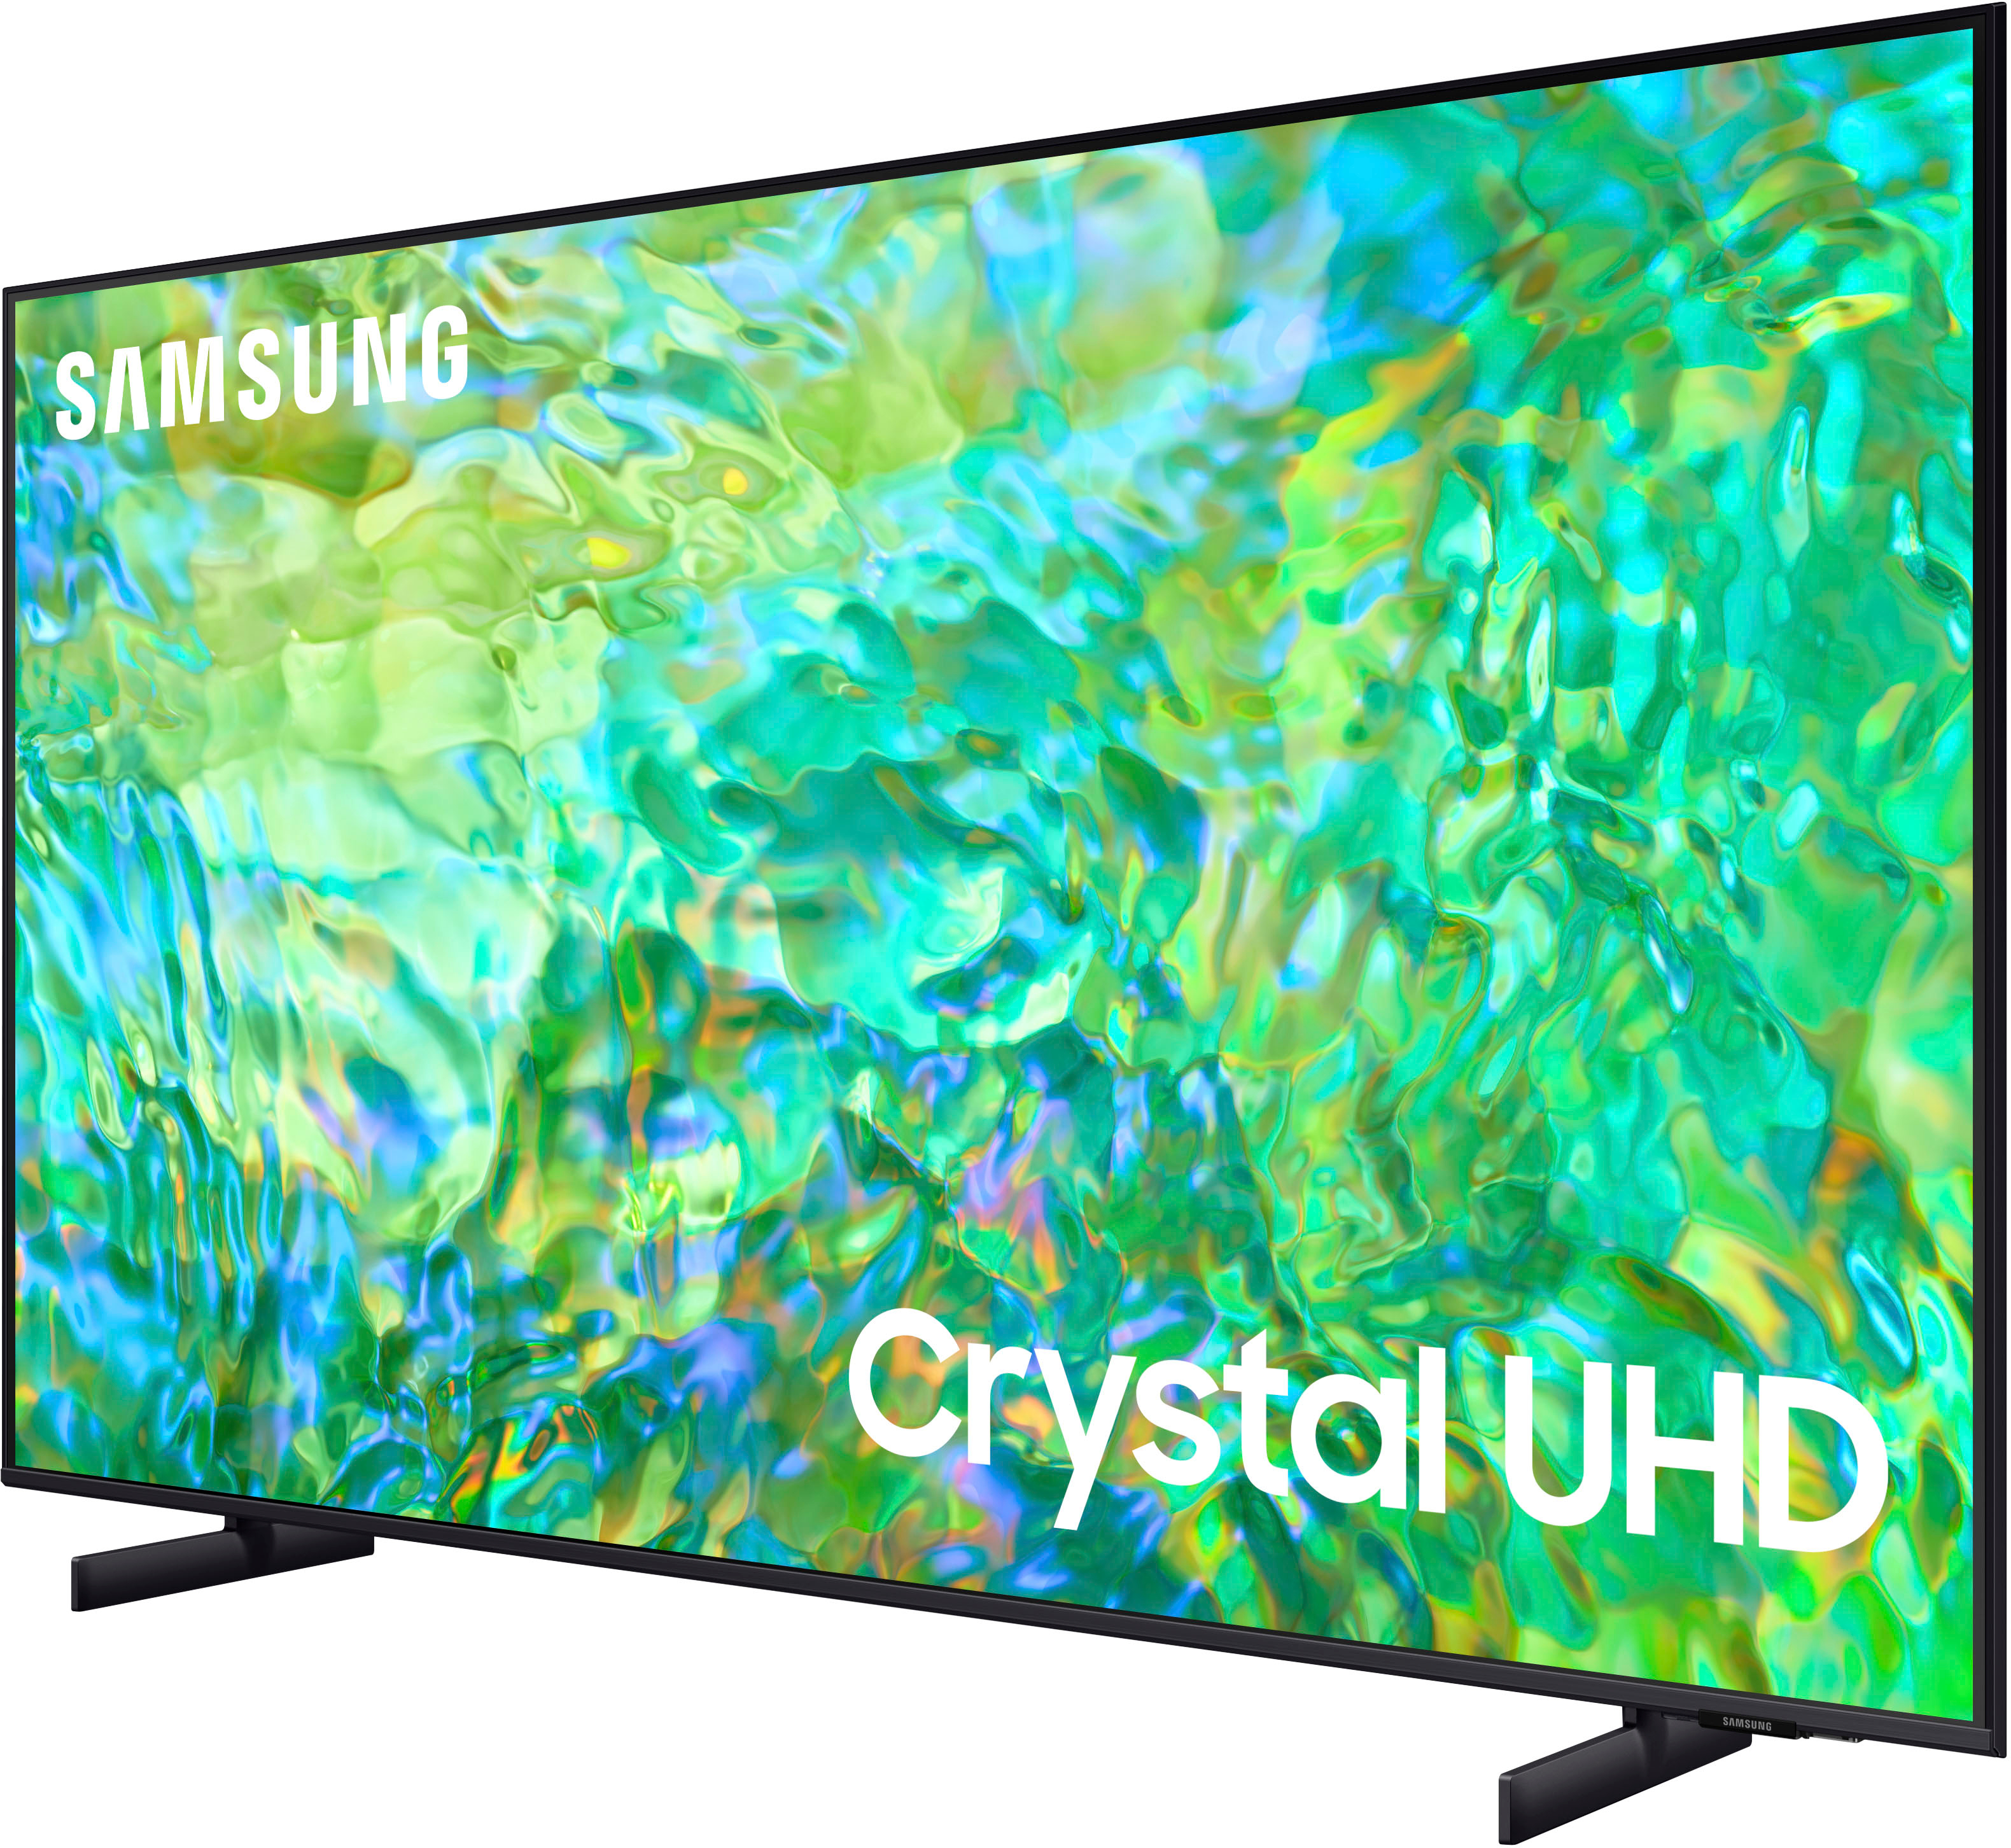 Samsung 85 Class CU8000 Crystal UHD 4K Smart Tizen TV